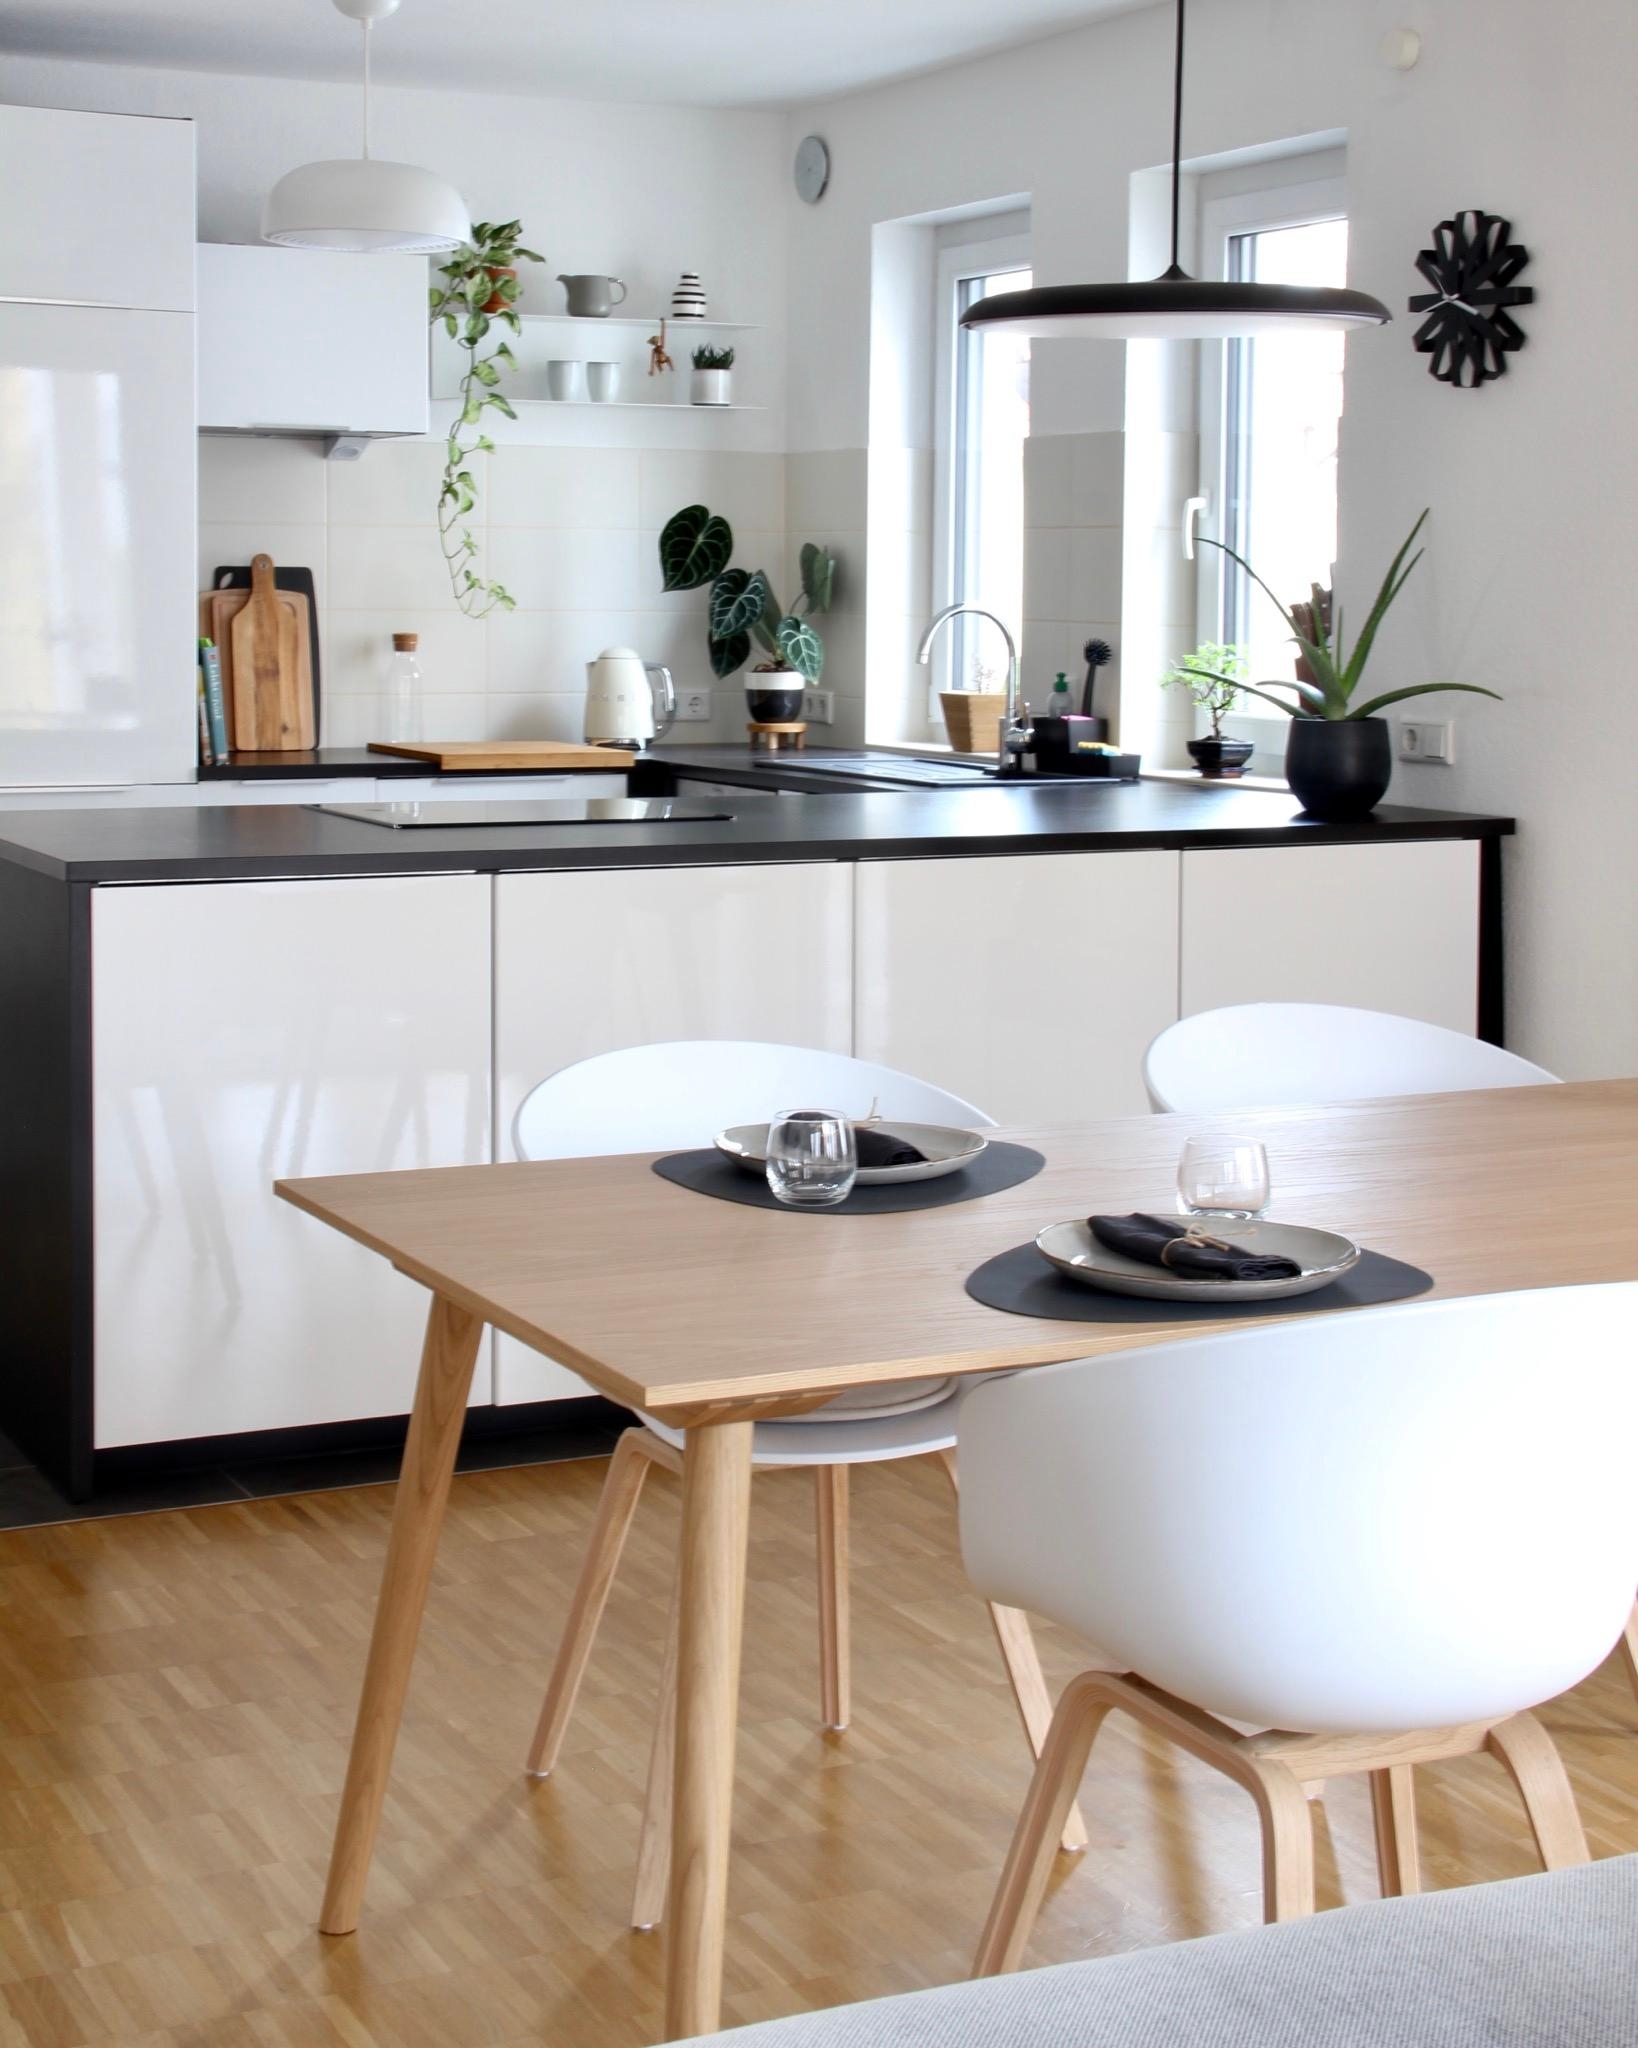 Unser offener Bereich ist Küche Esszimmer und Wohnzimmer in einem🤍Ich bin so happy damit☺️#lieblingsraum #livingchallenge